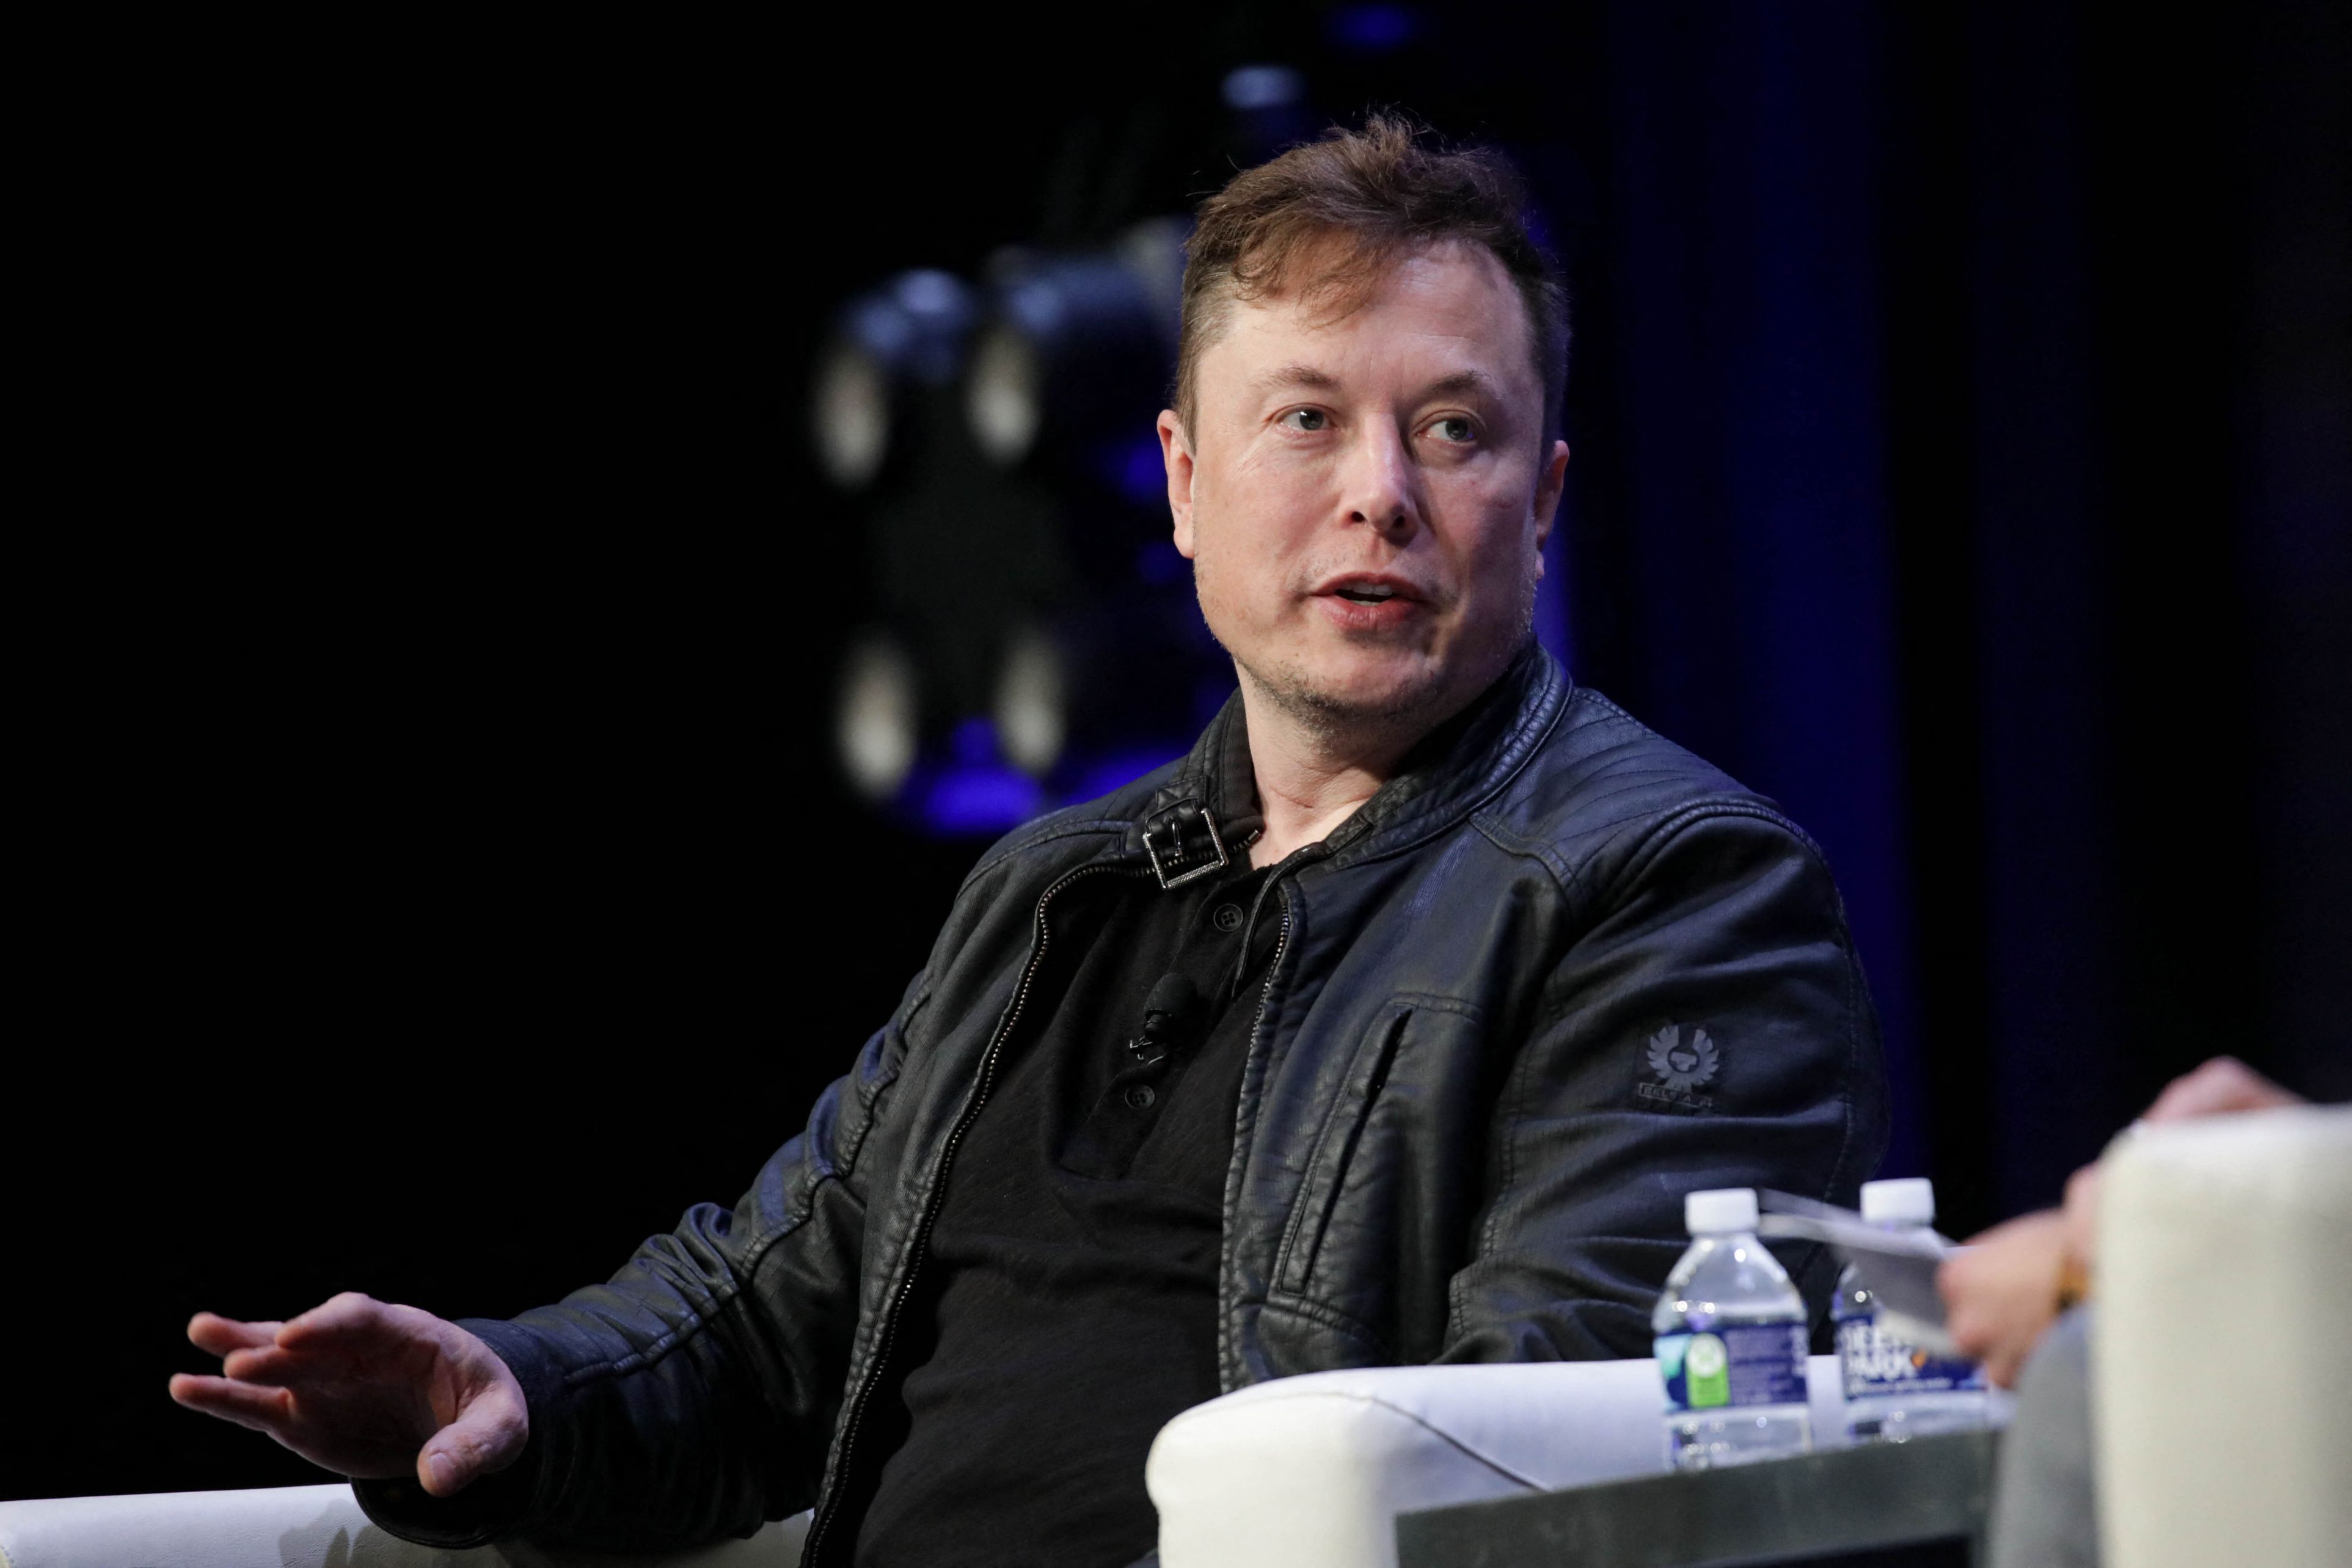 Rezultate confuze: Elon Musk a primit două rezultate pozitive, dar şi două negative în 24 de ore